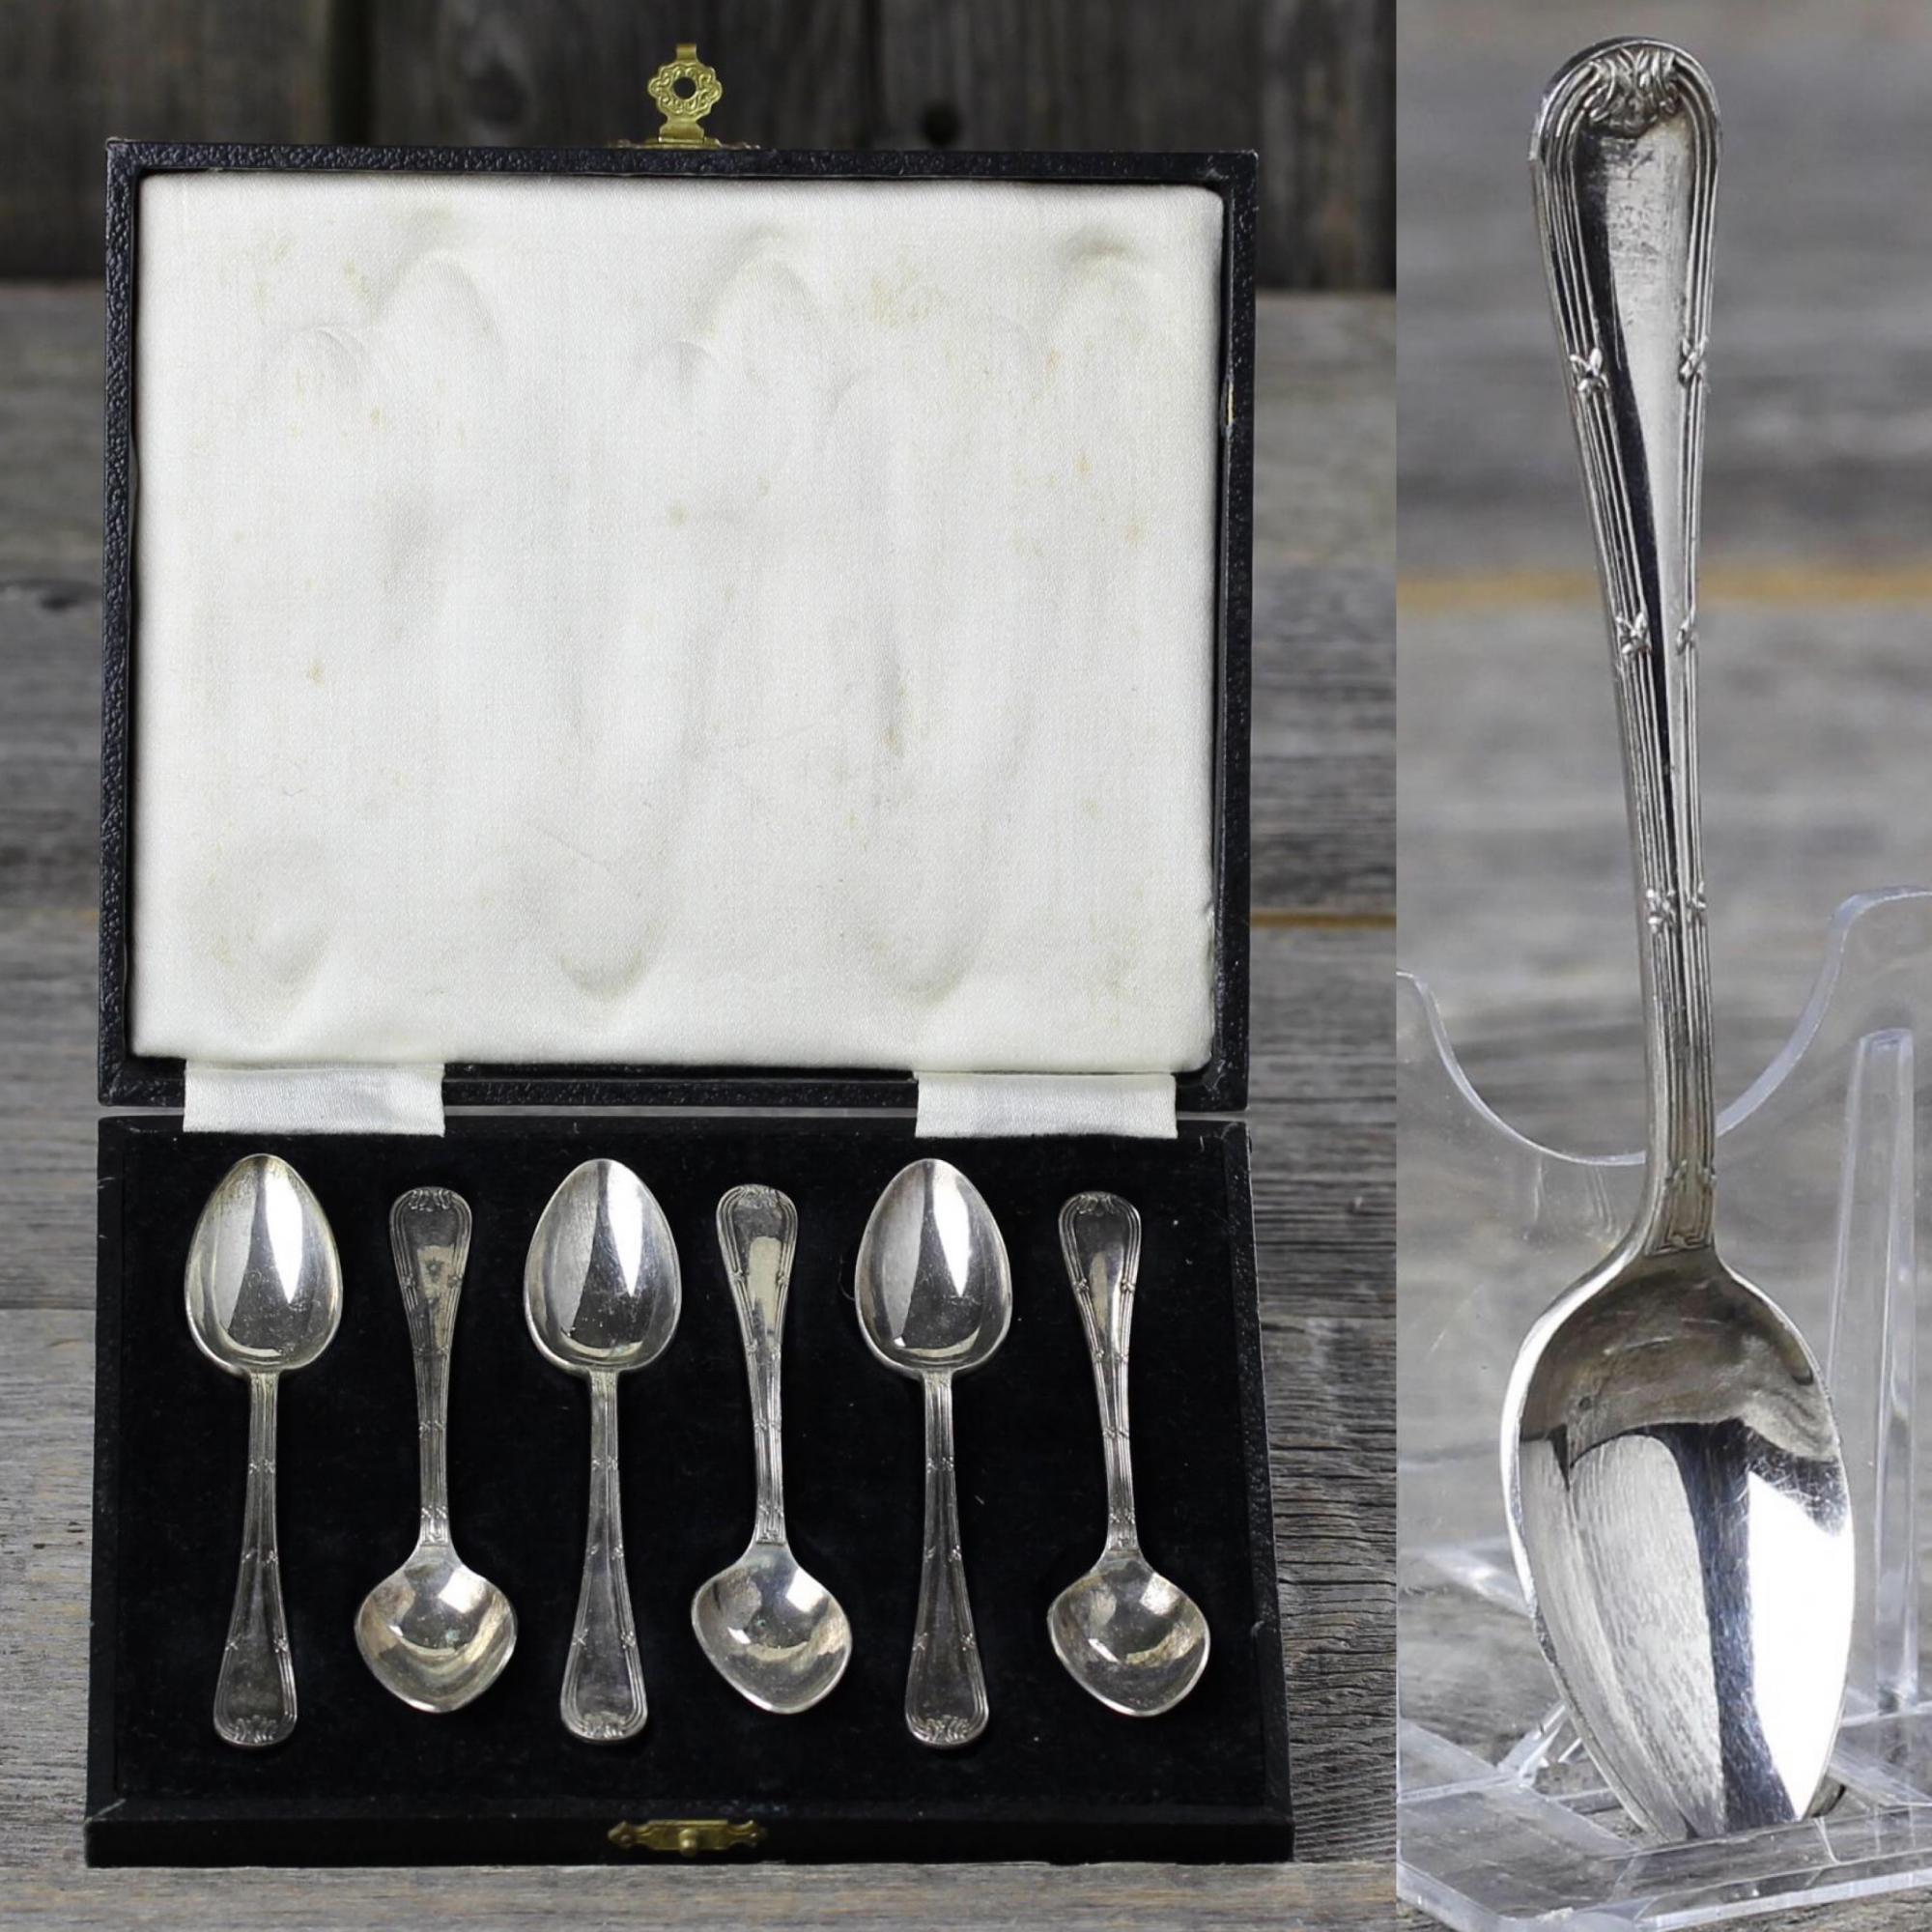 Шесть антикварных английских кофейных ложек с серебряным покрытием в аутентичном кофре